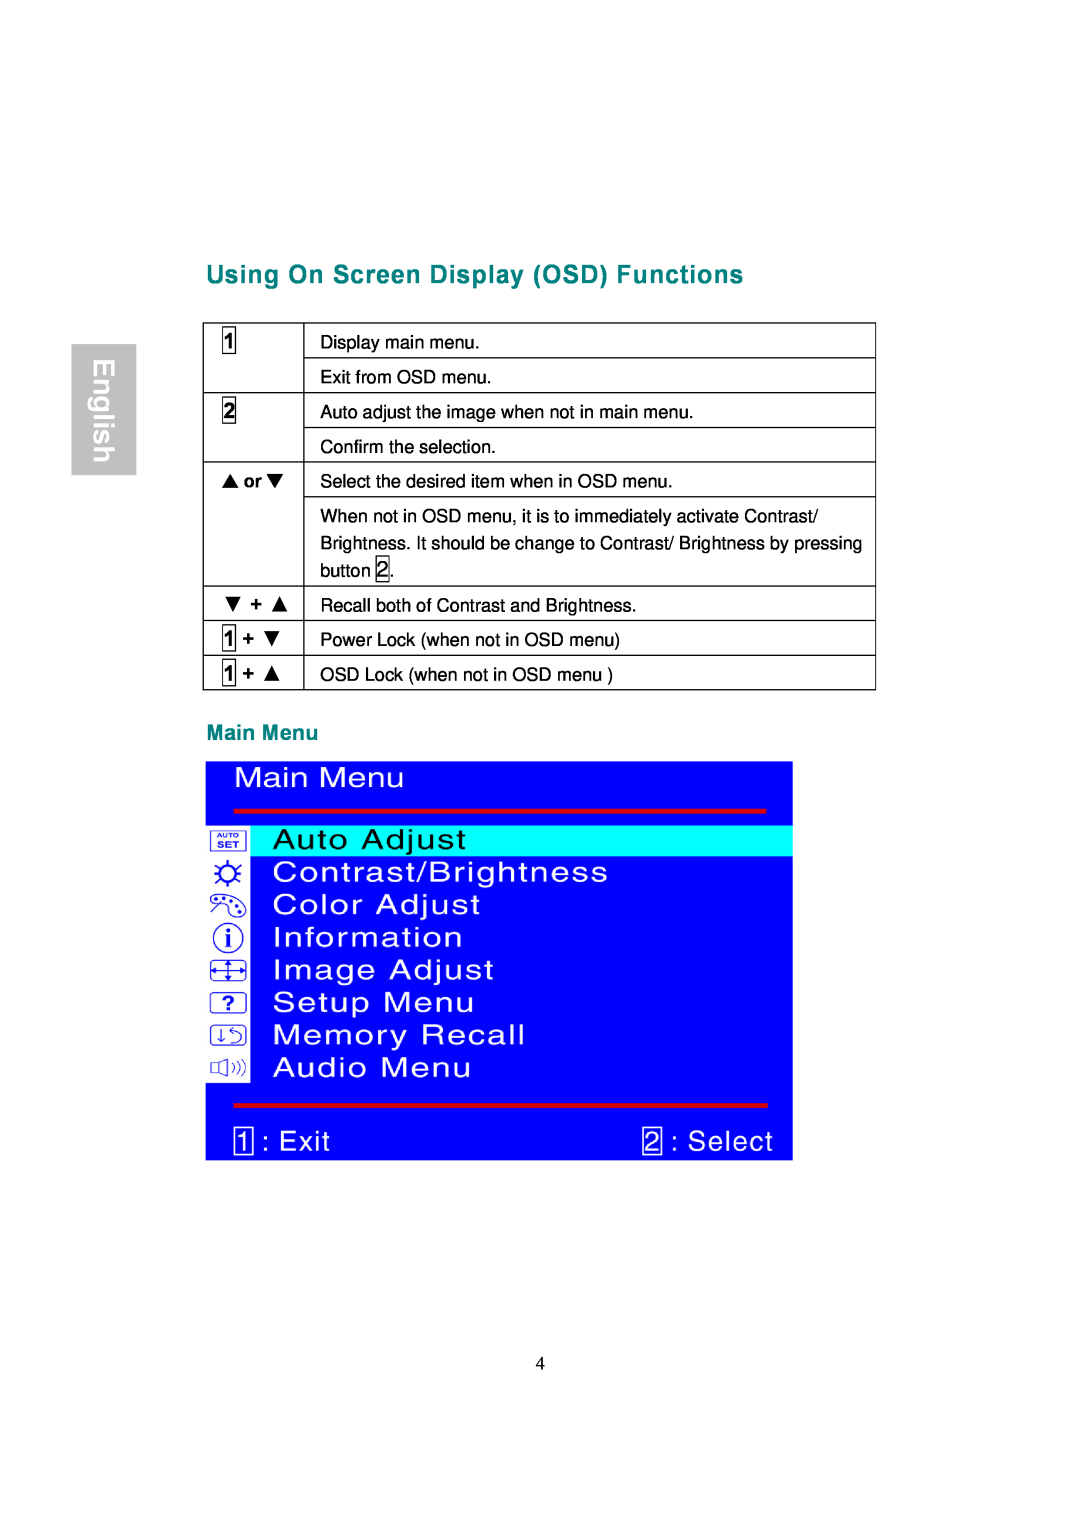 AOC 177Sa-1 manual Using On Screen Display OSD Functions, Main Menu, English 